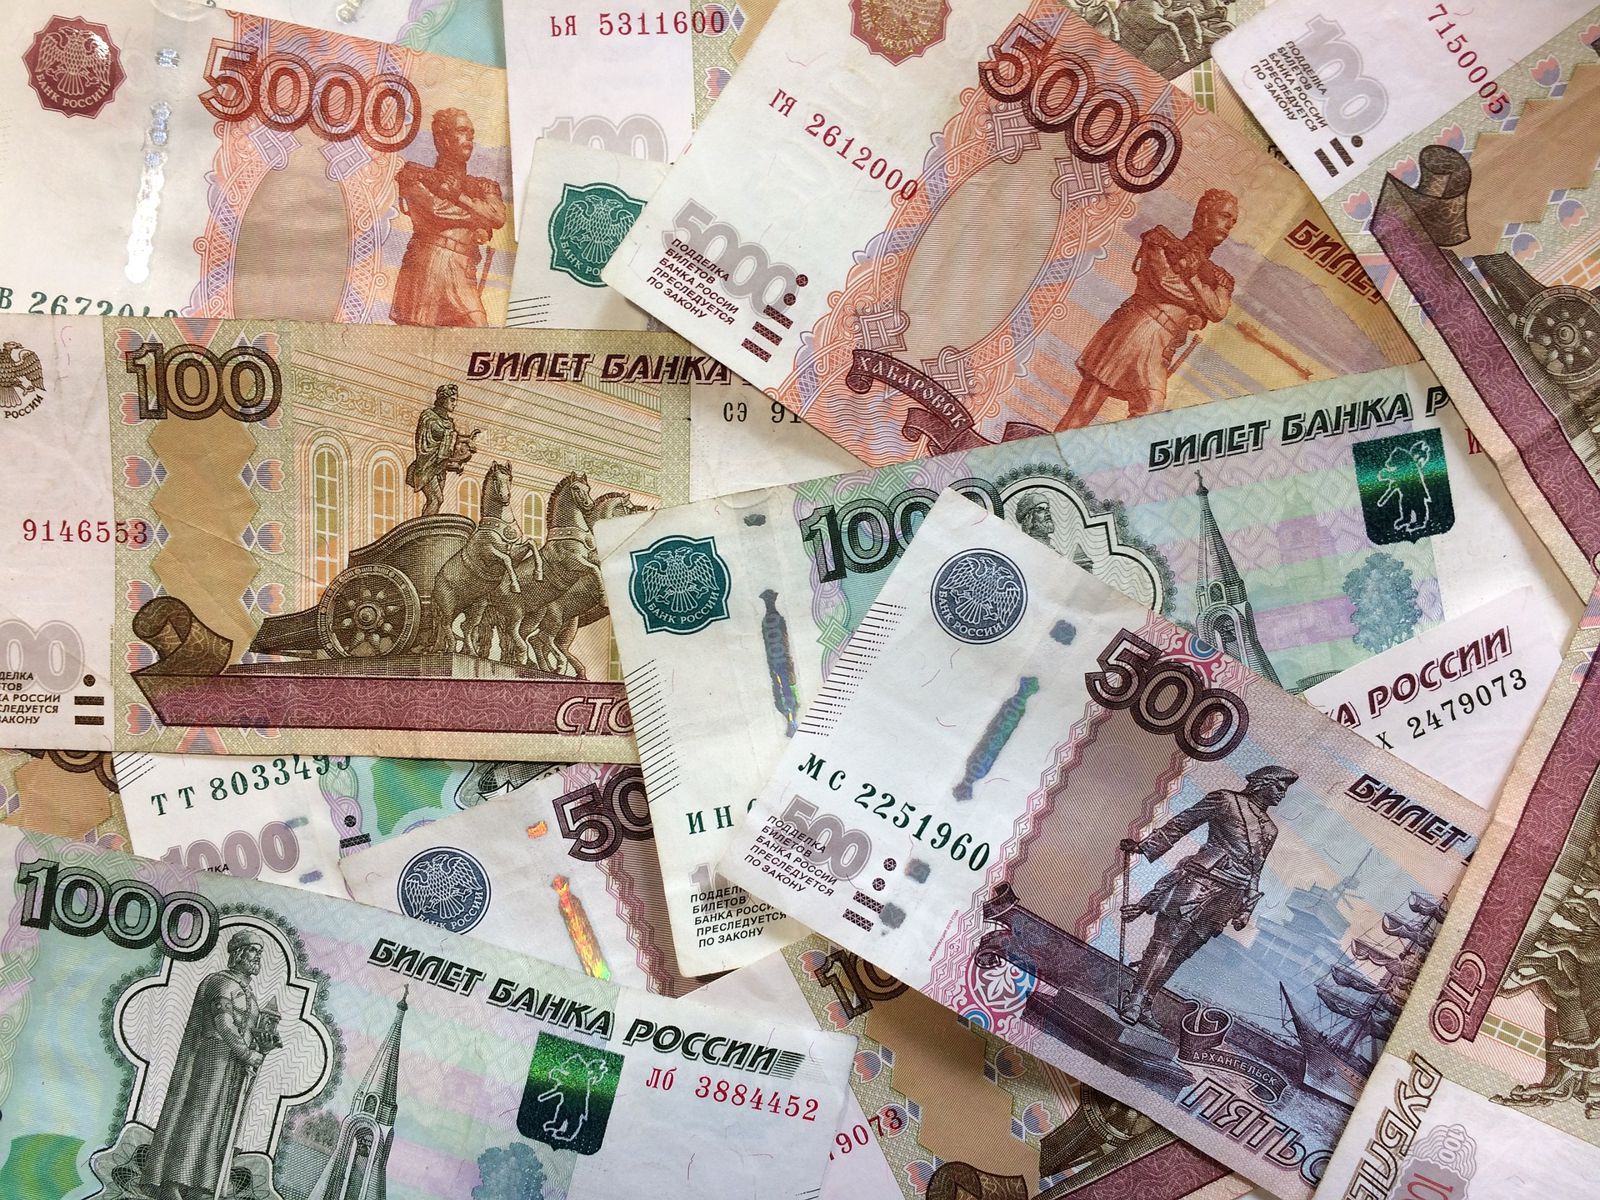 Два пермяка ограбили бизнесмена на 800 тысяч рублей, чтобы выплатить автокредиты 